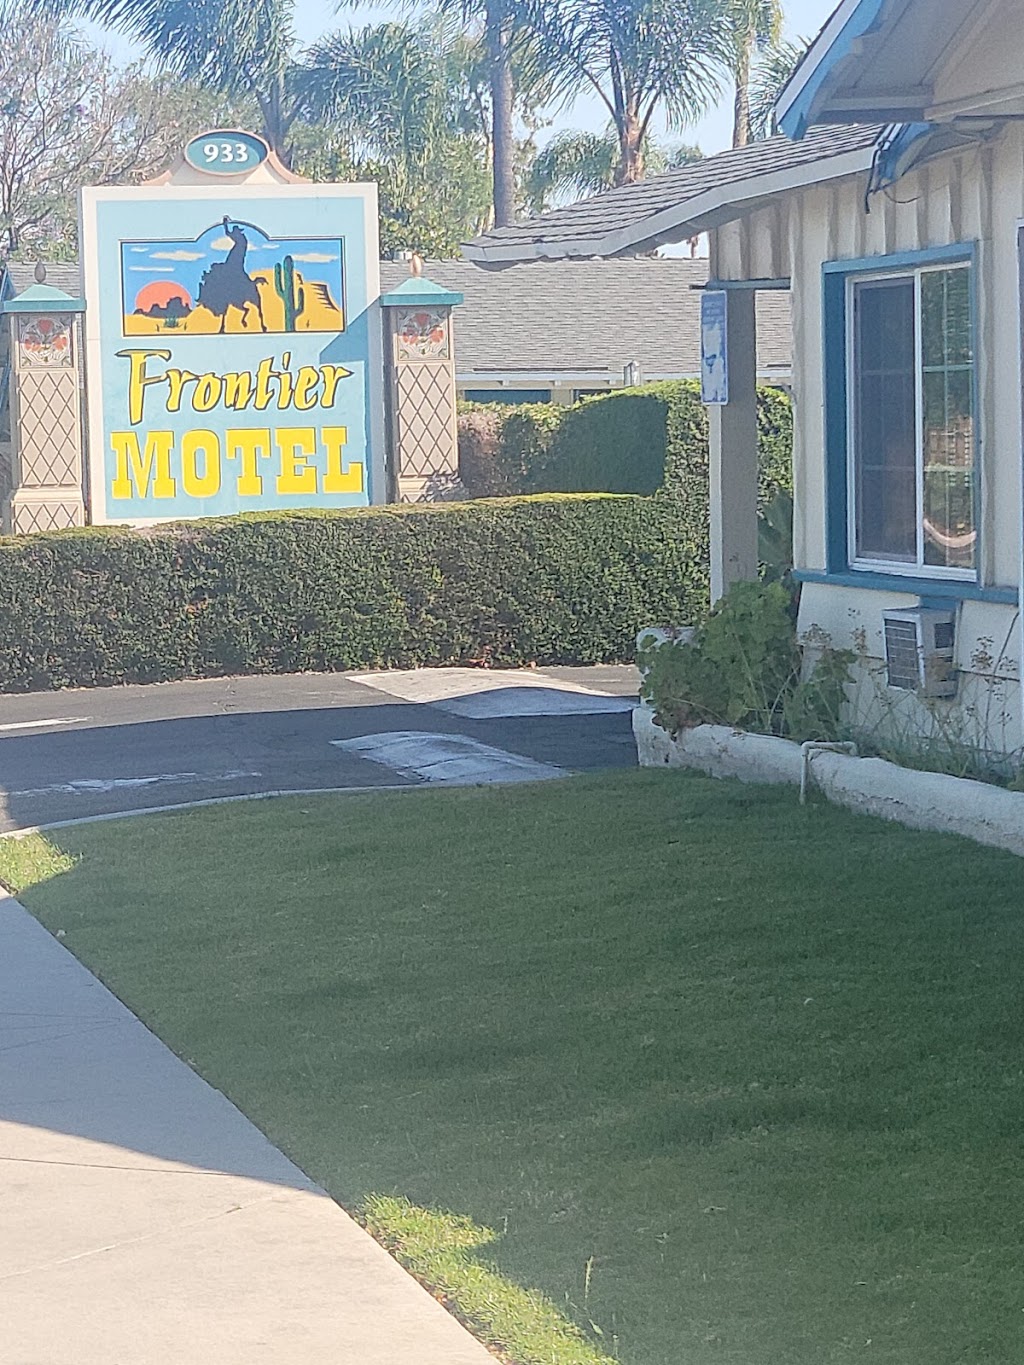 Frontier Motel | 933 S Harbor Blvd, Anaheim, CA 92805 | Phone: (714) 774-1818